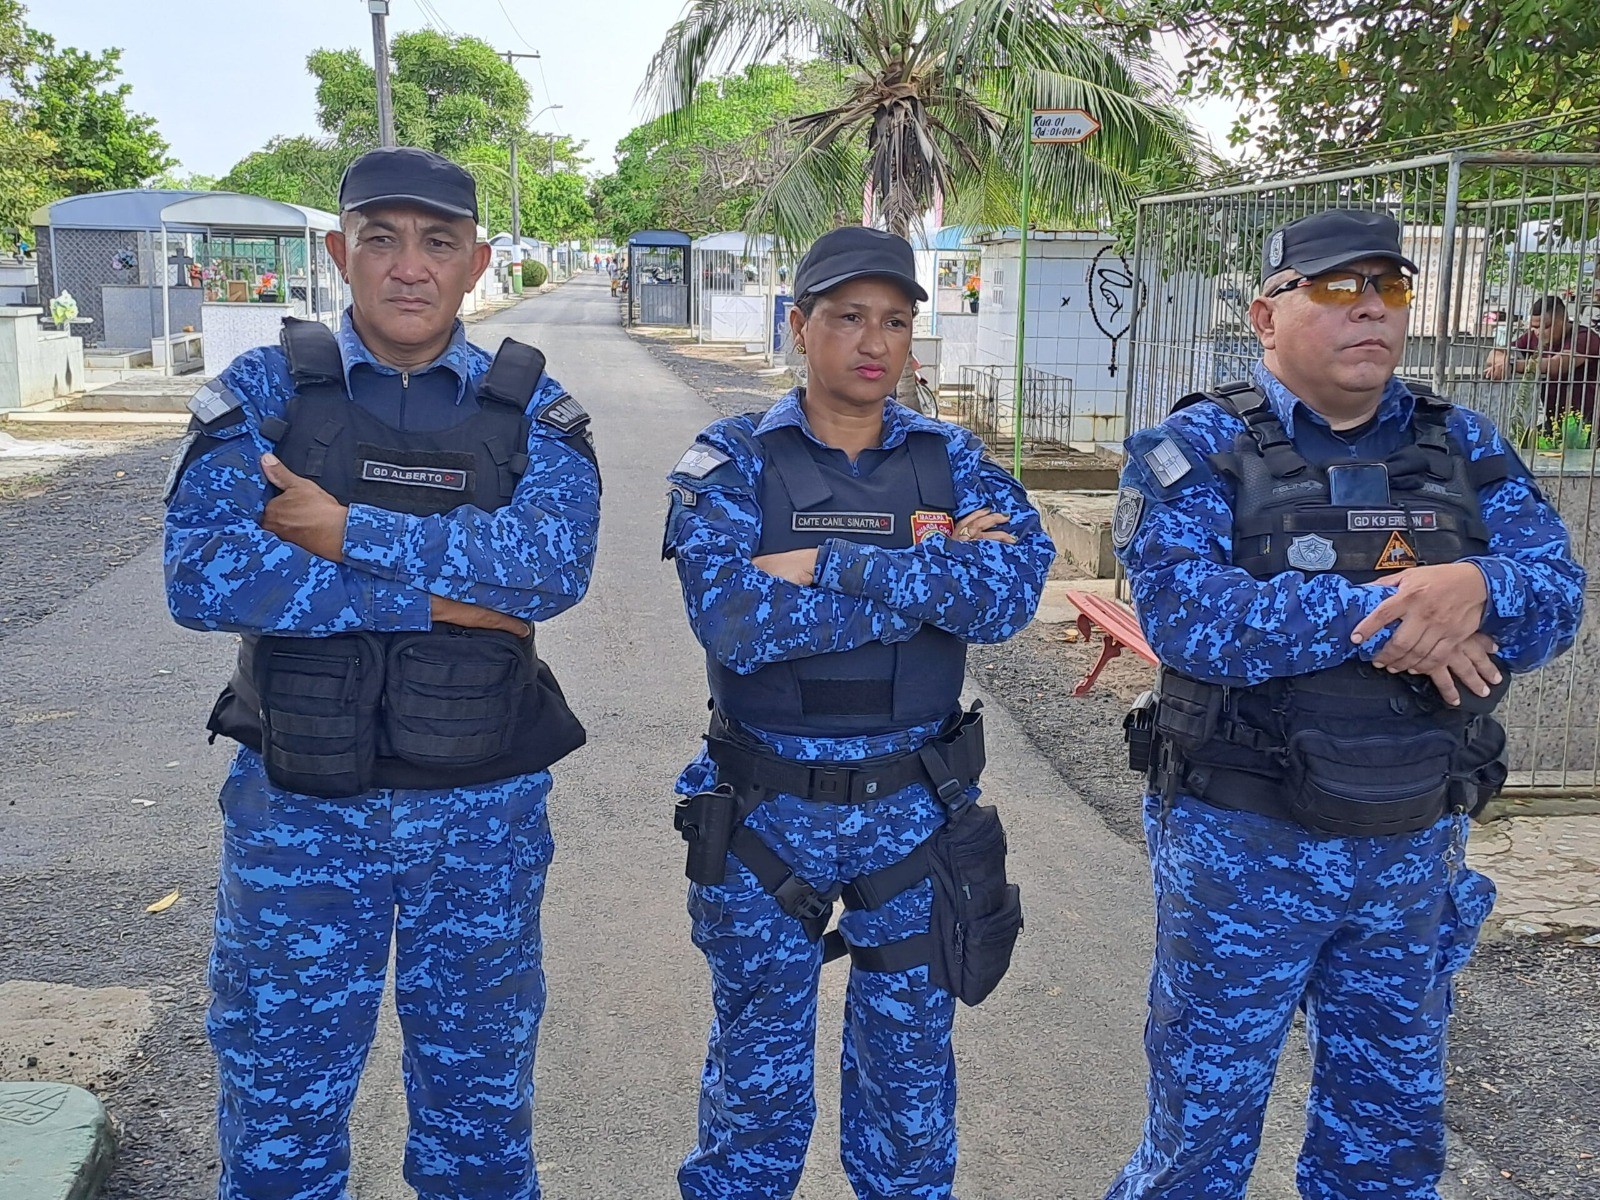 Guarda Municipal intensifica patrulhamento nos cemitérios de Macapá para evitar depredações